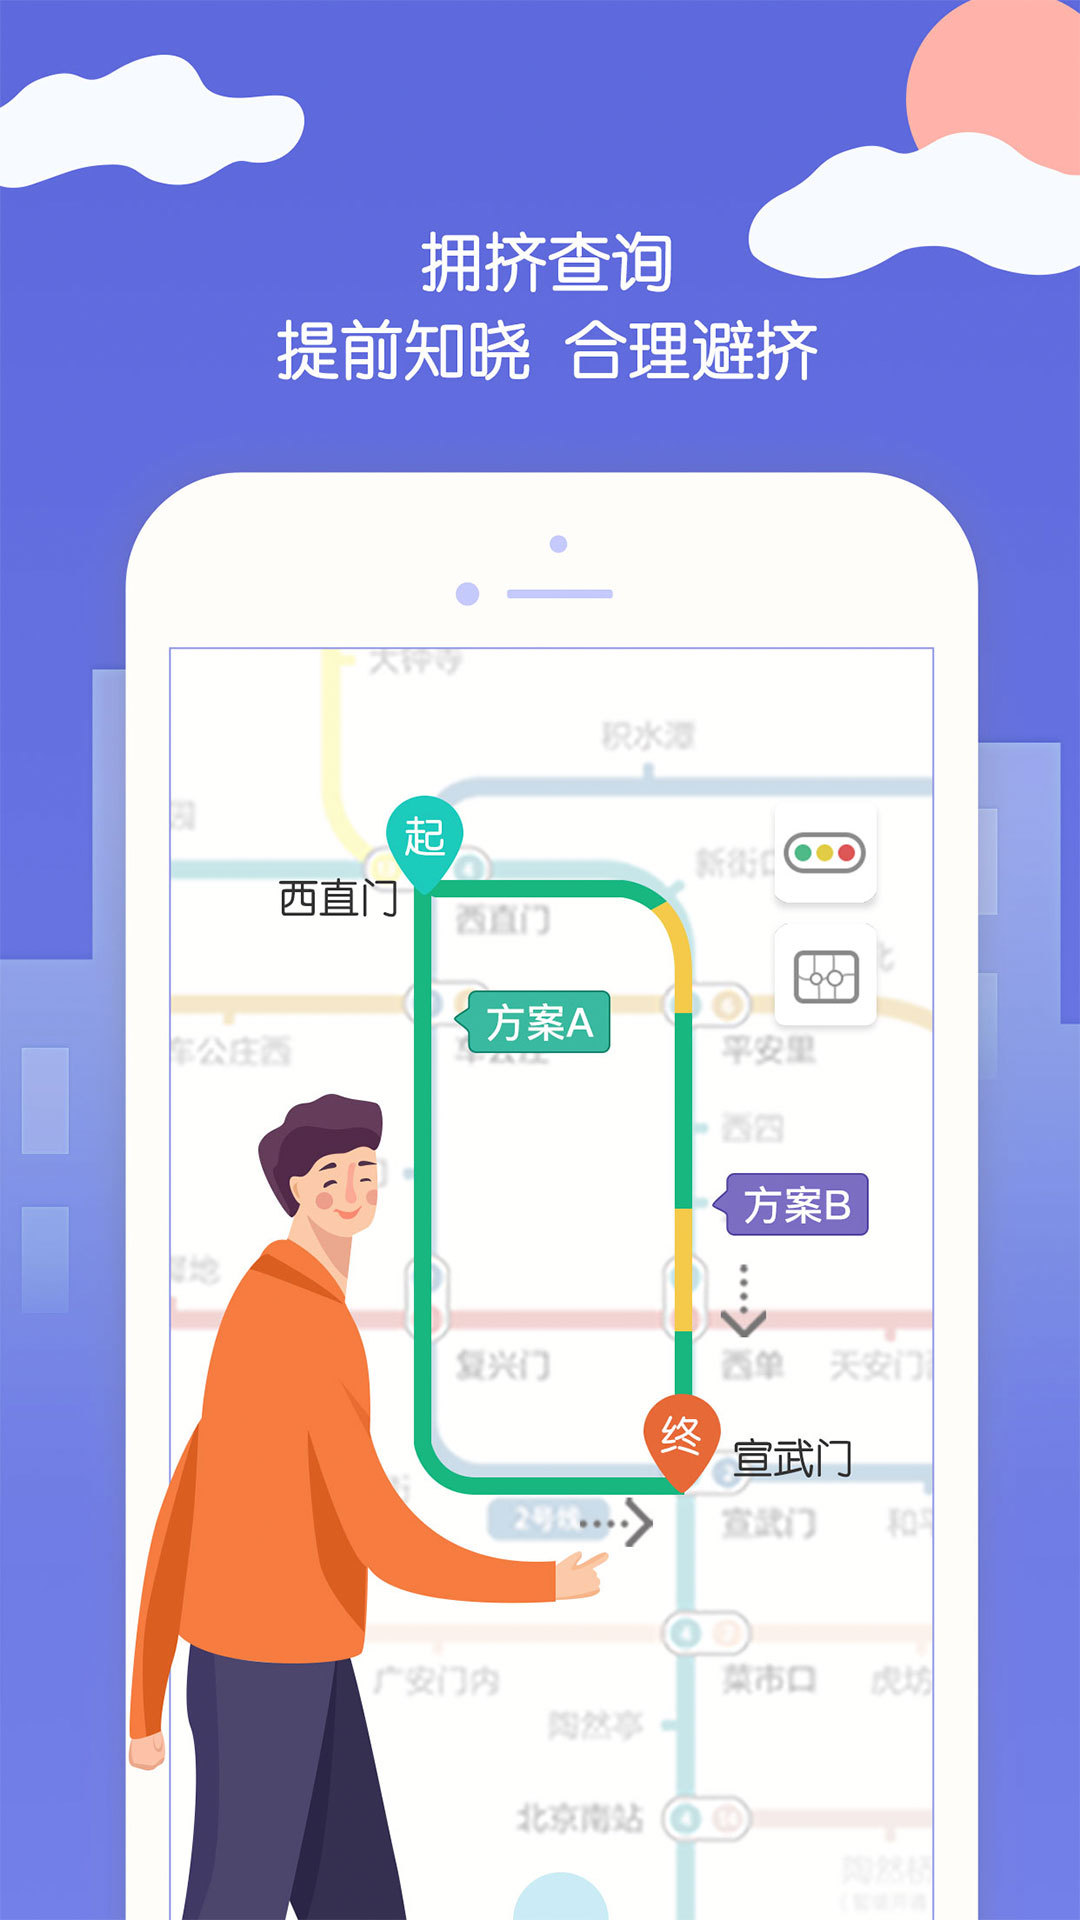 北京平安地铁志愿者1.3.1版本app官方下载图片1